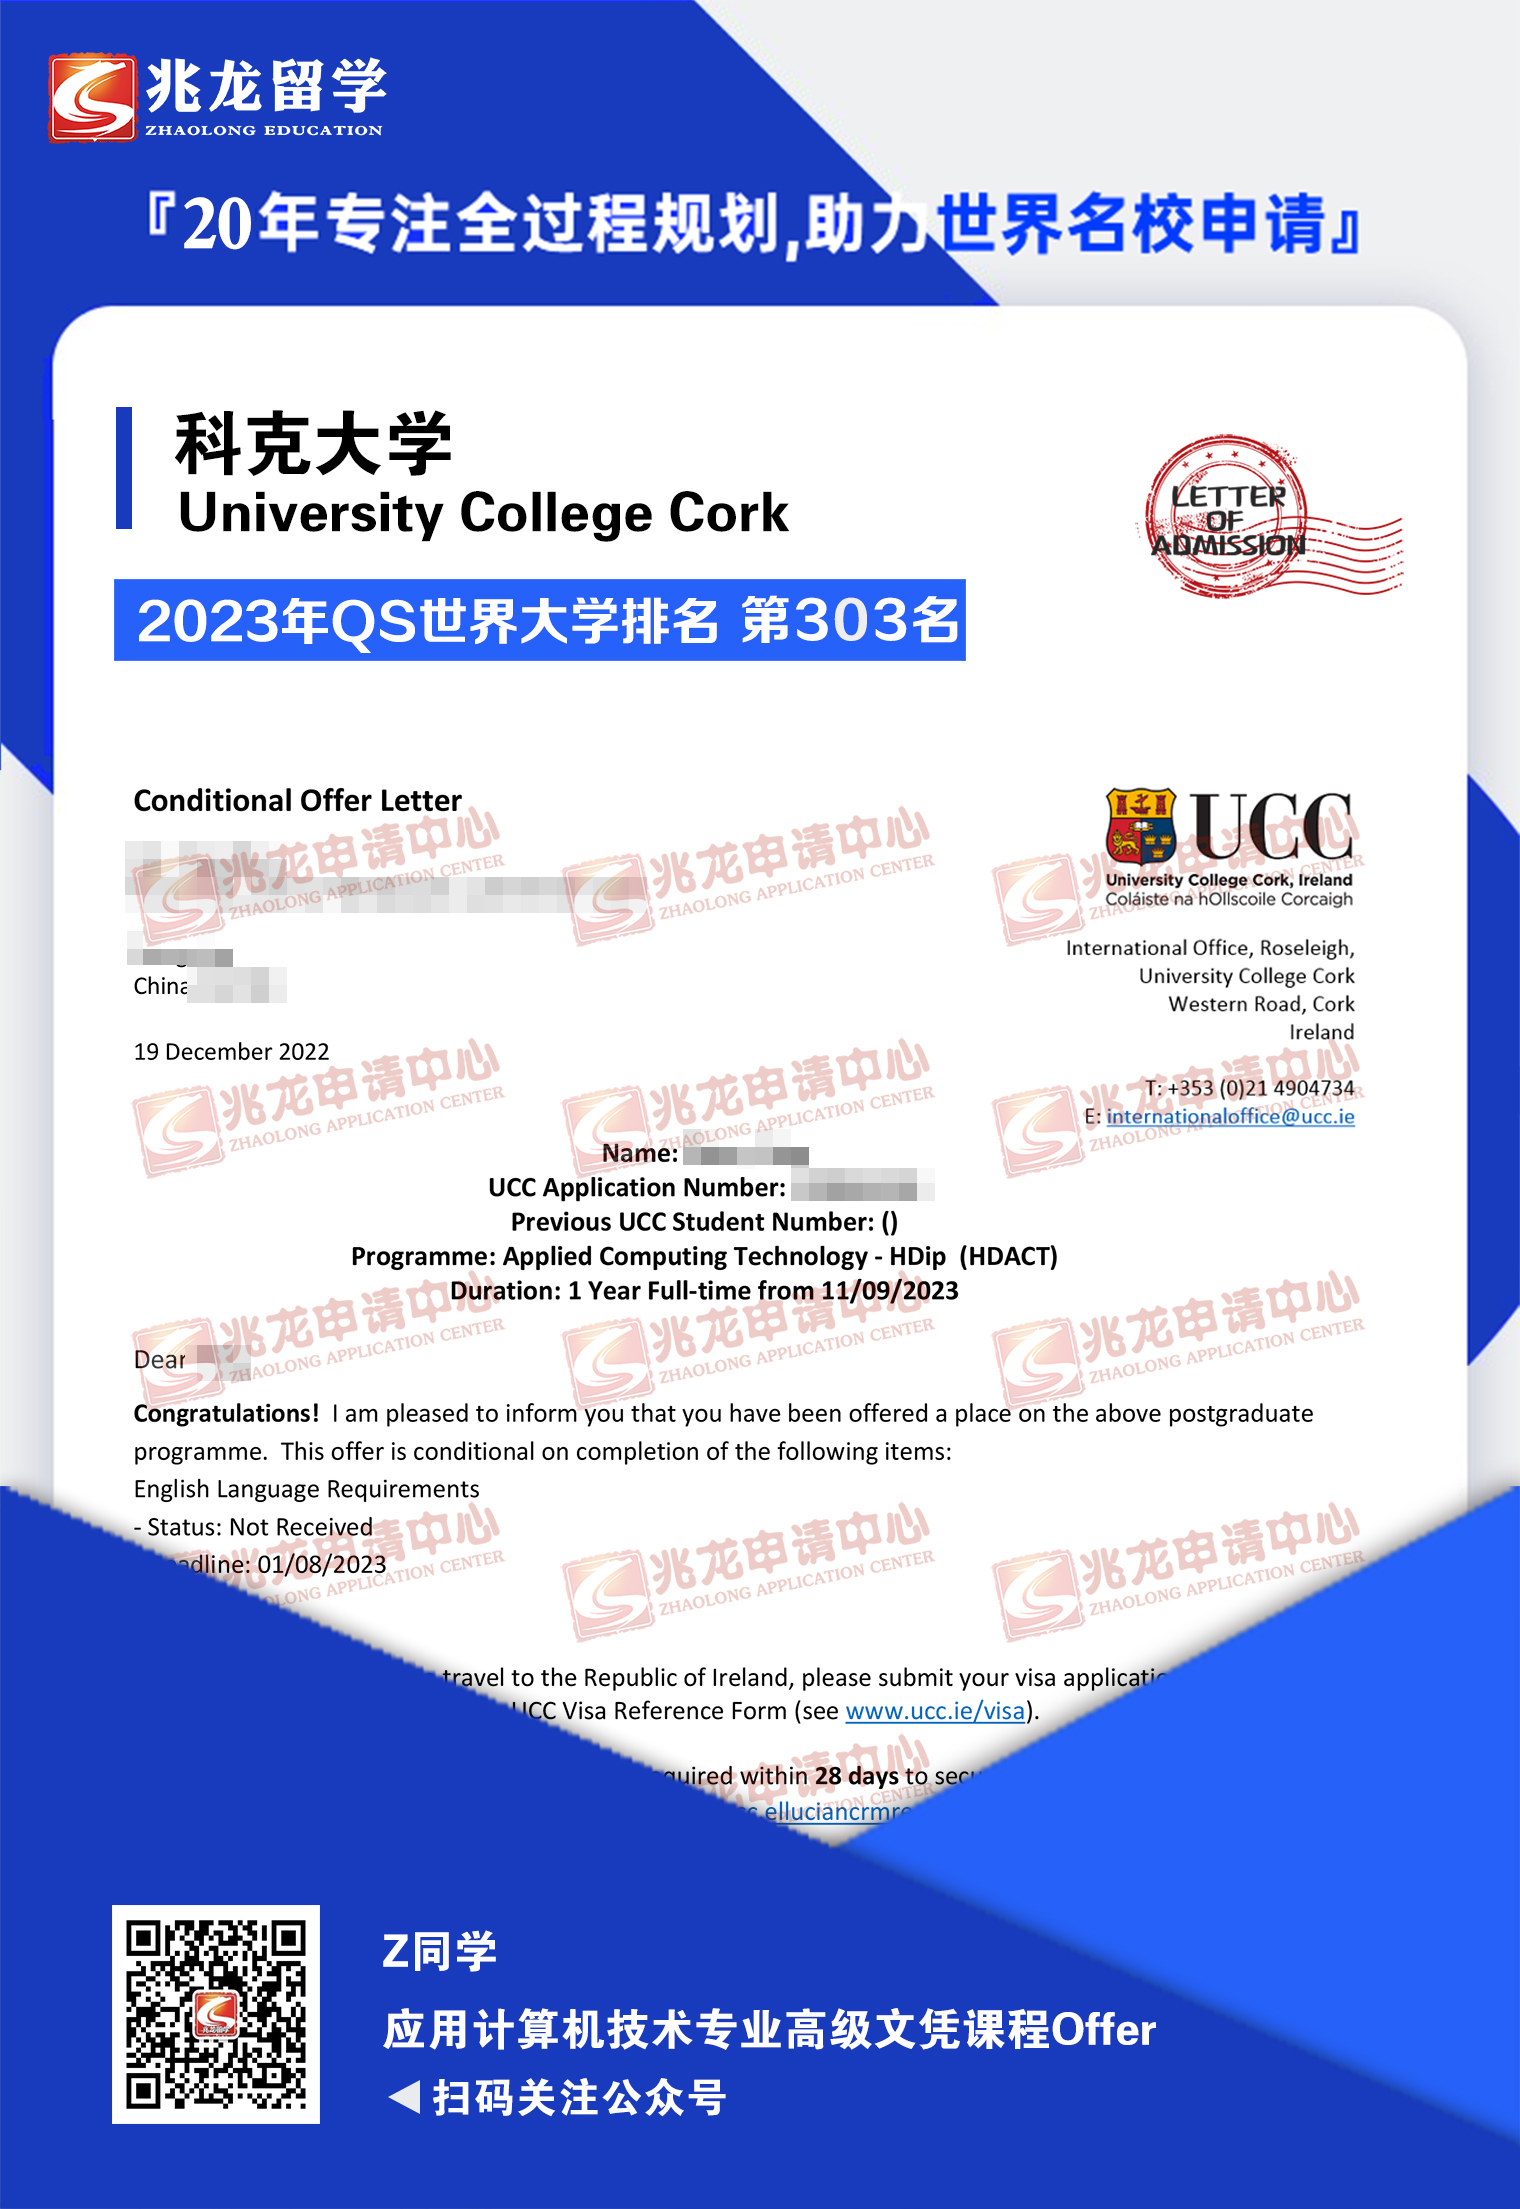 周ying爱尔兰科克大学应用计算机技术专业高级文凭课程offer-兆龙留学.jpg